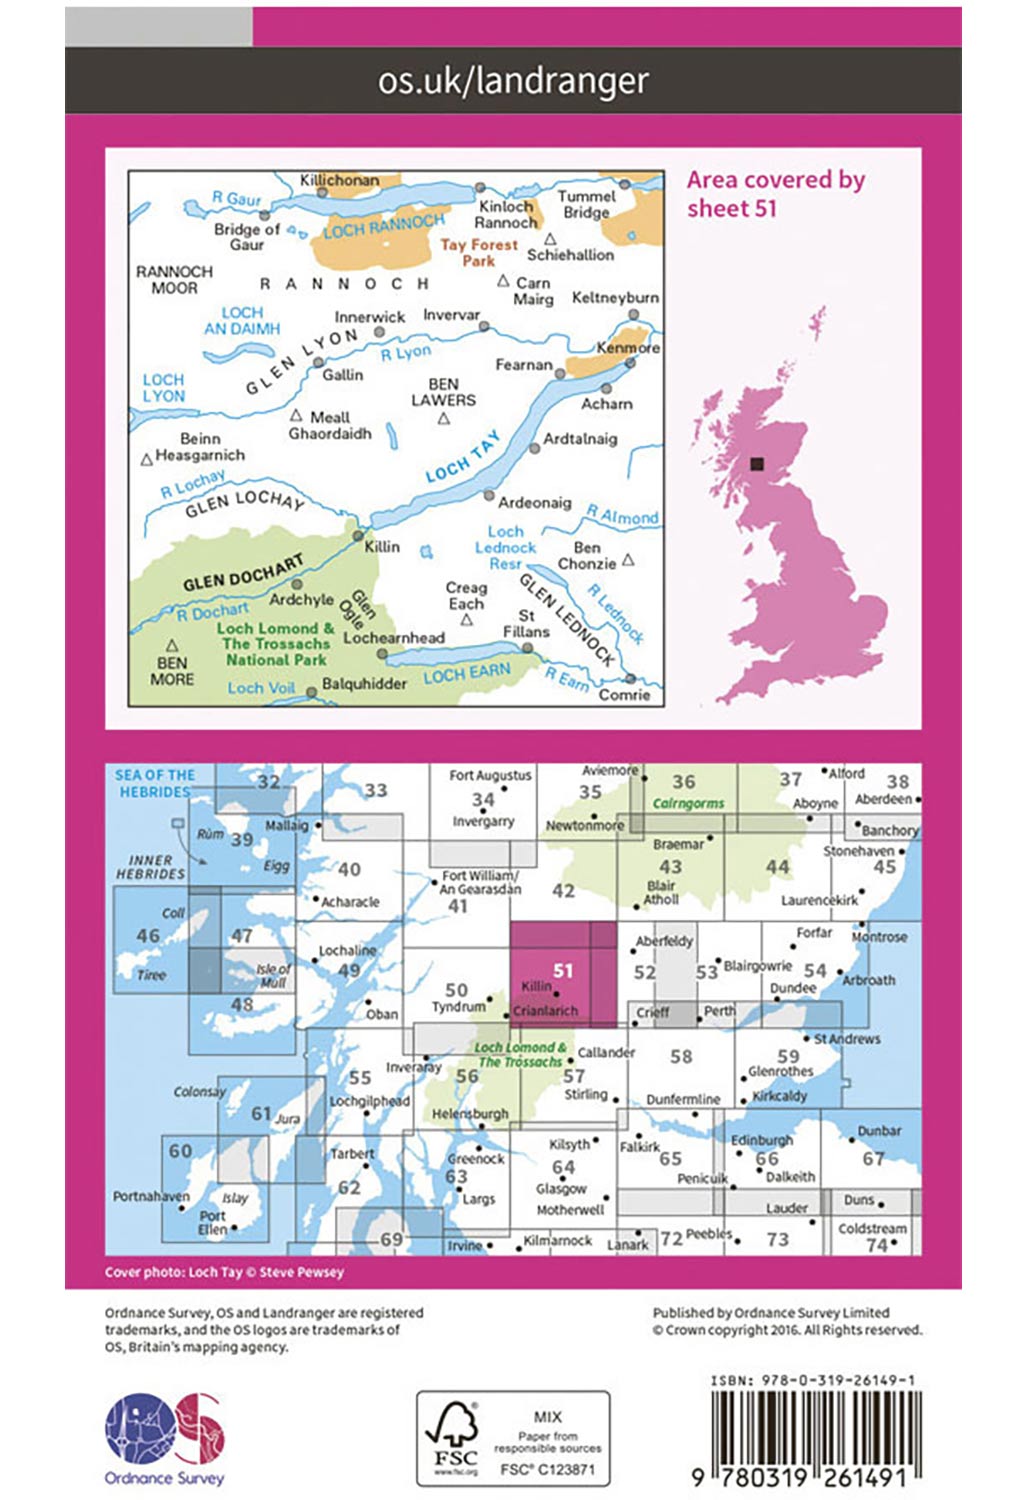 Ordnance Survey Loch Tay & Glen Dochart - Landranger 51 Map